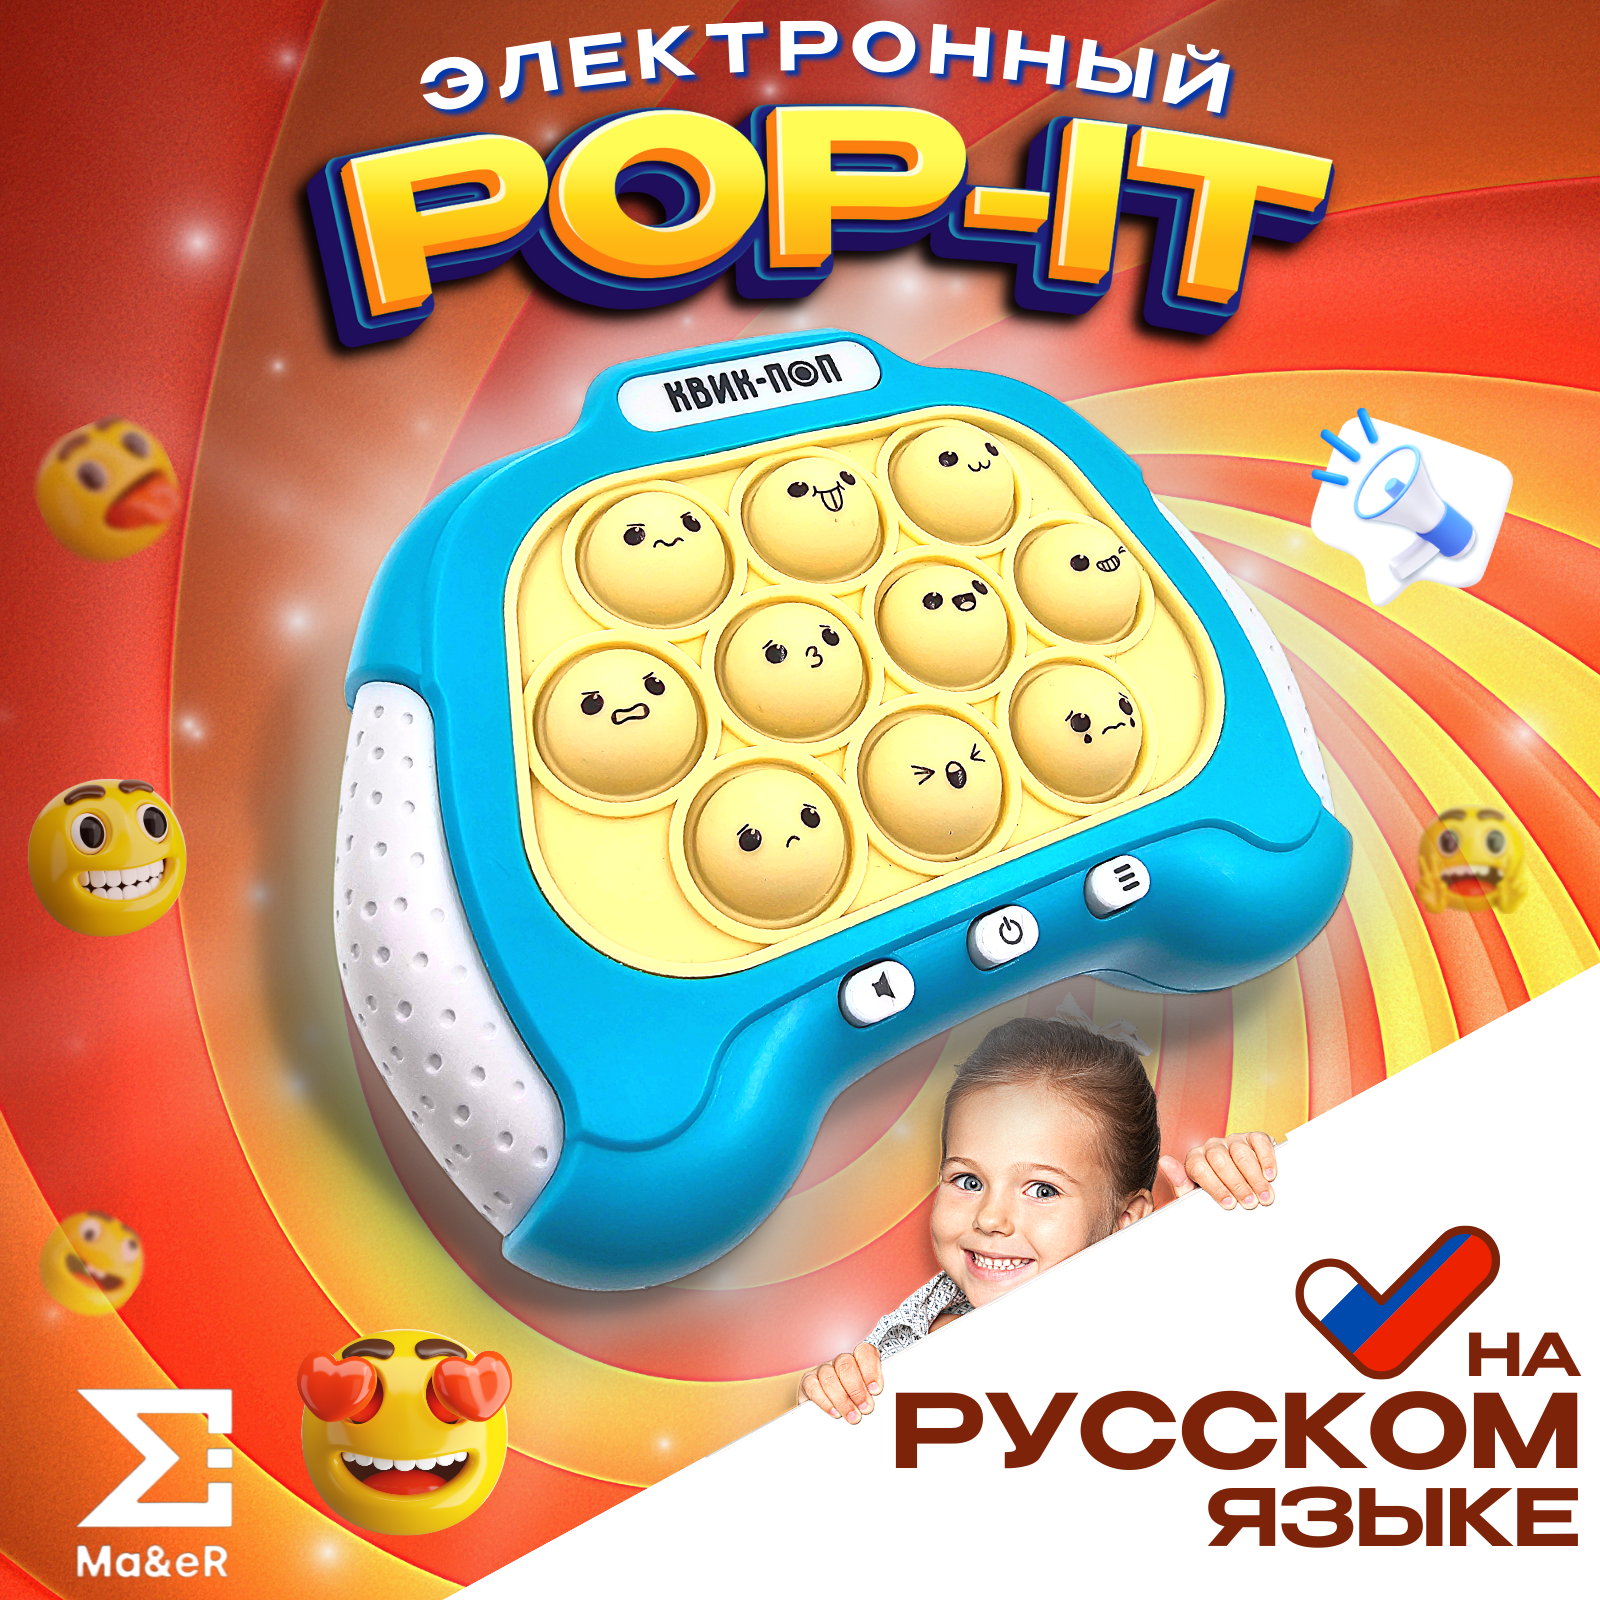 Поп ит электронный Pop it антистресс симпл димпл на русском языке